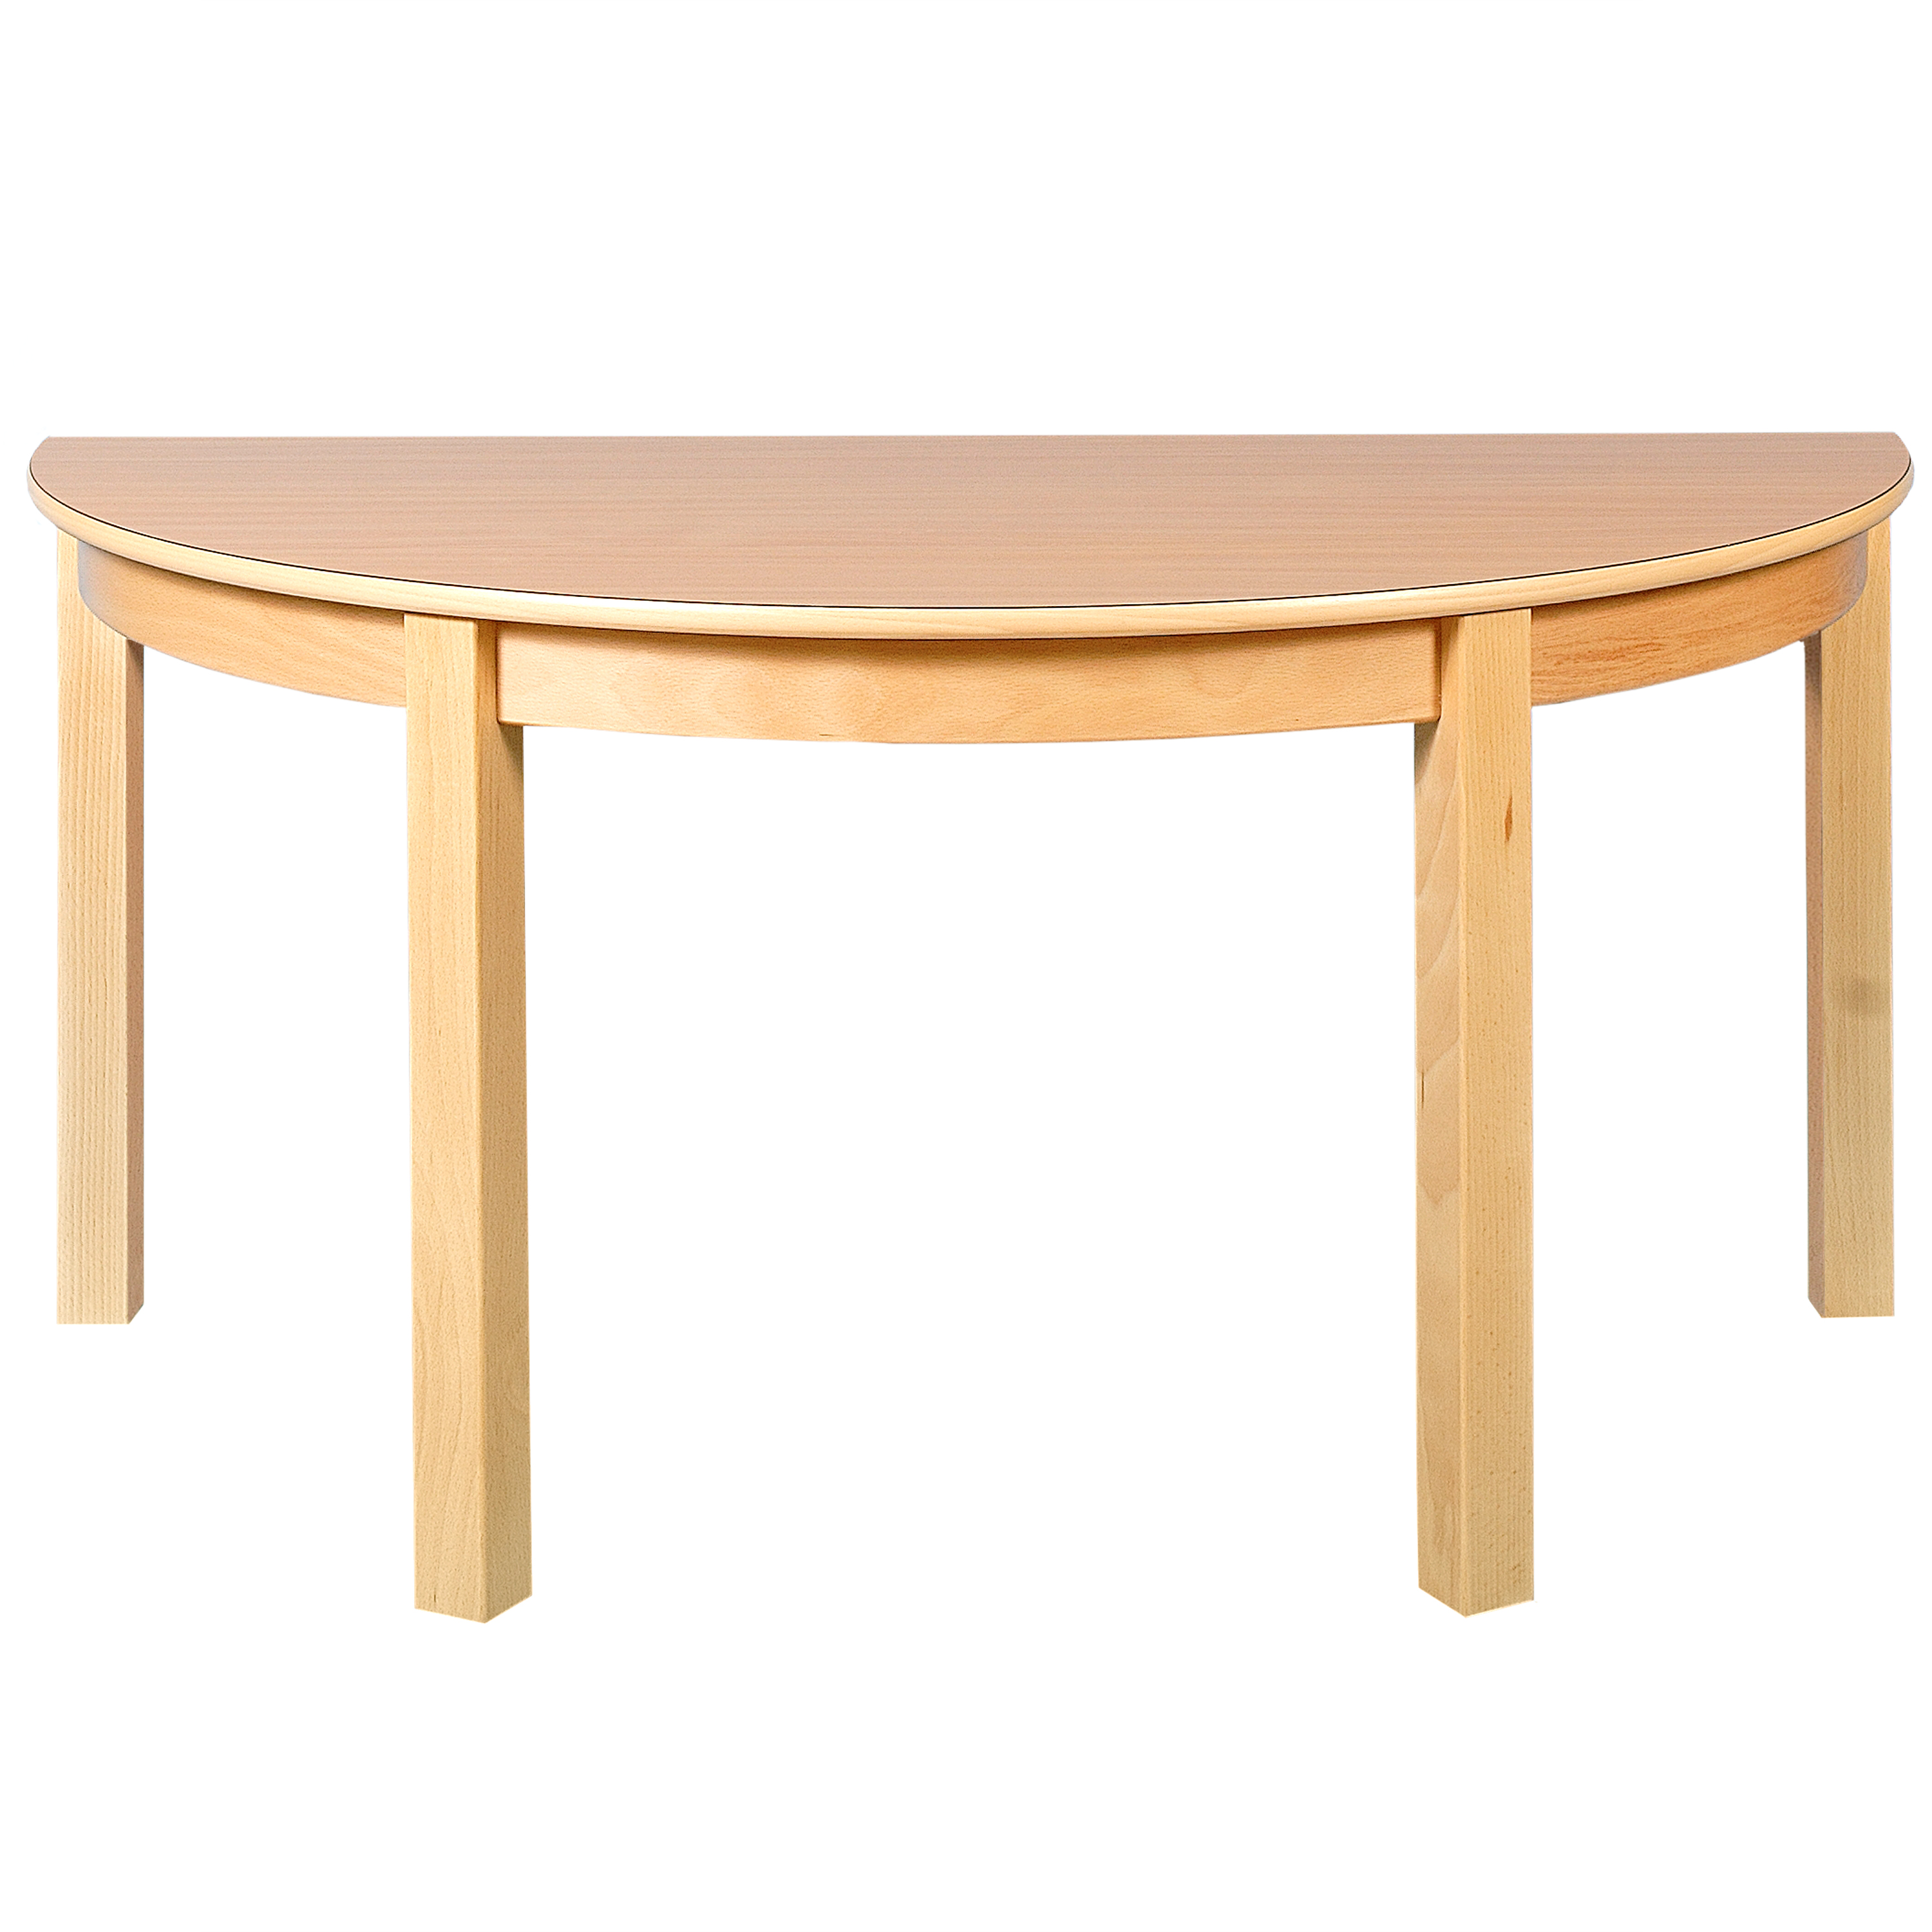 Halbkreis-Tisch, Durchmesser 120 cm, Tischhöhe 40 cm